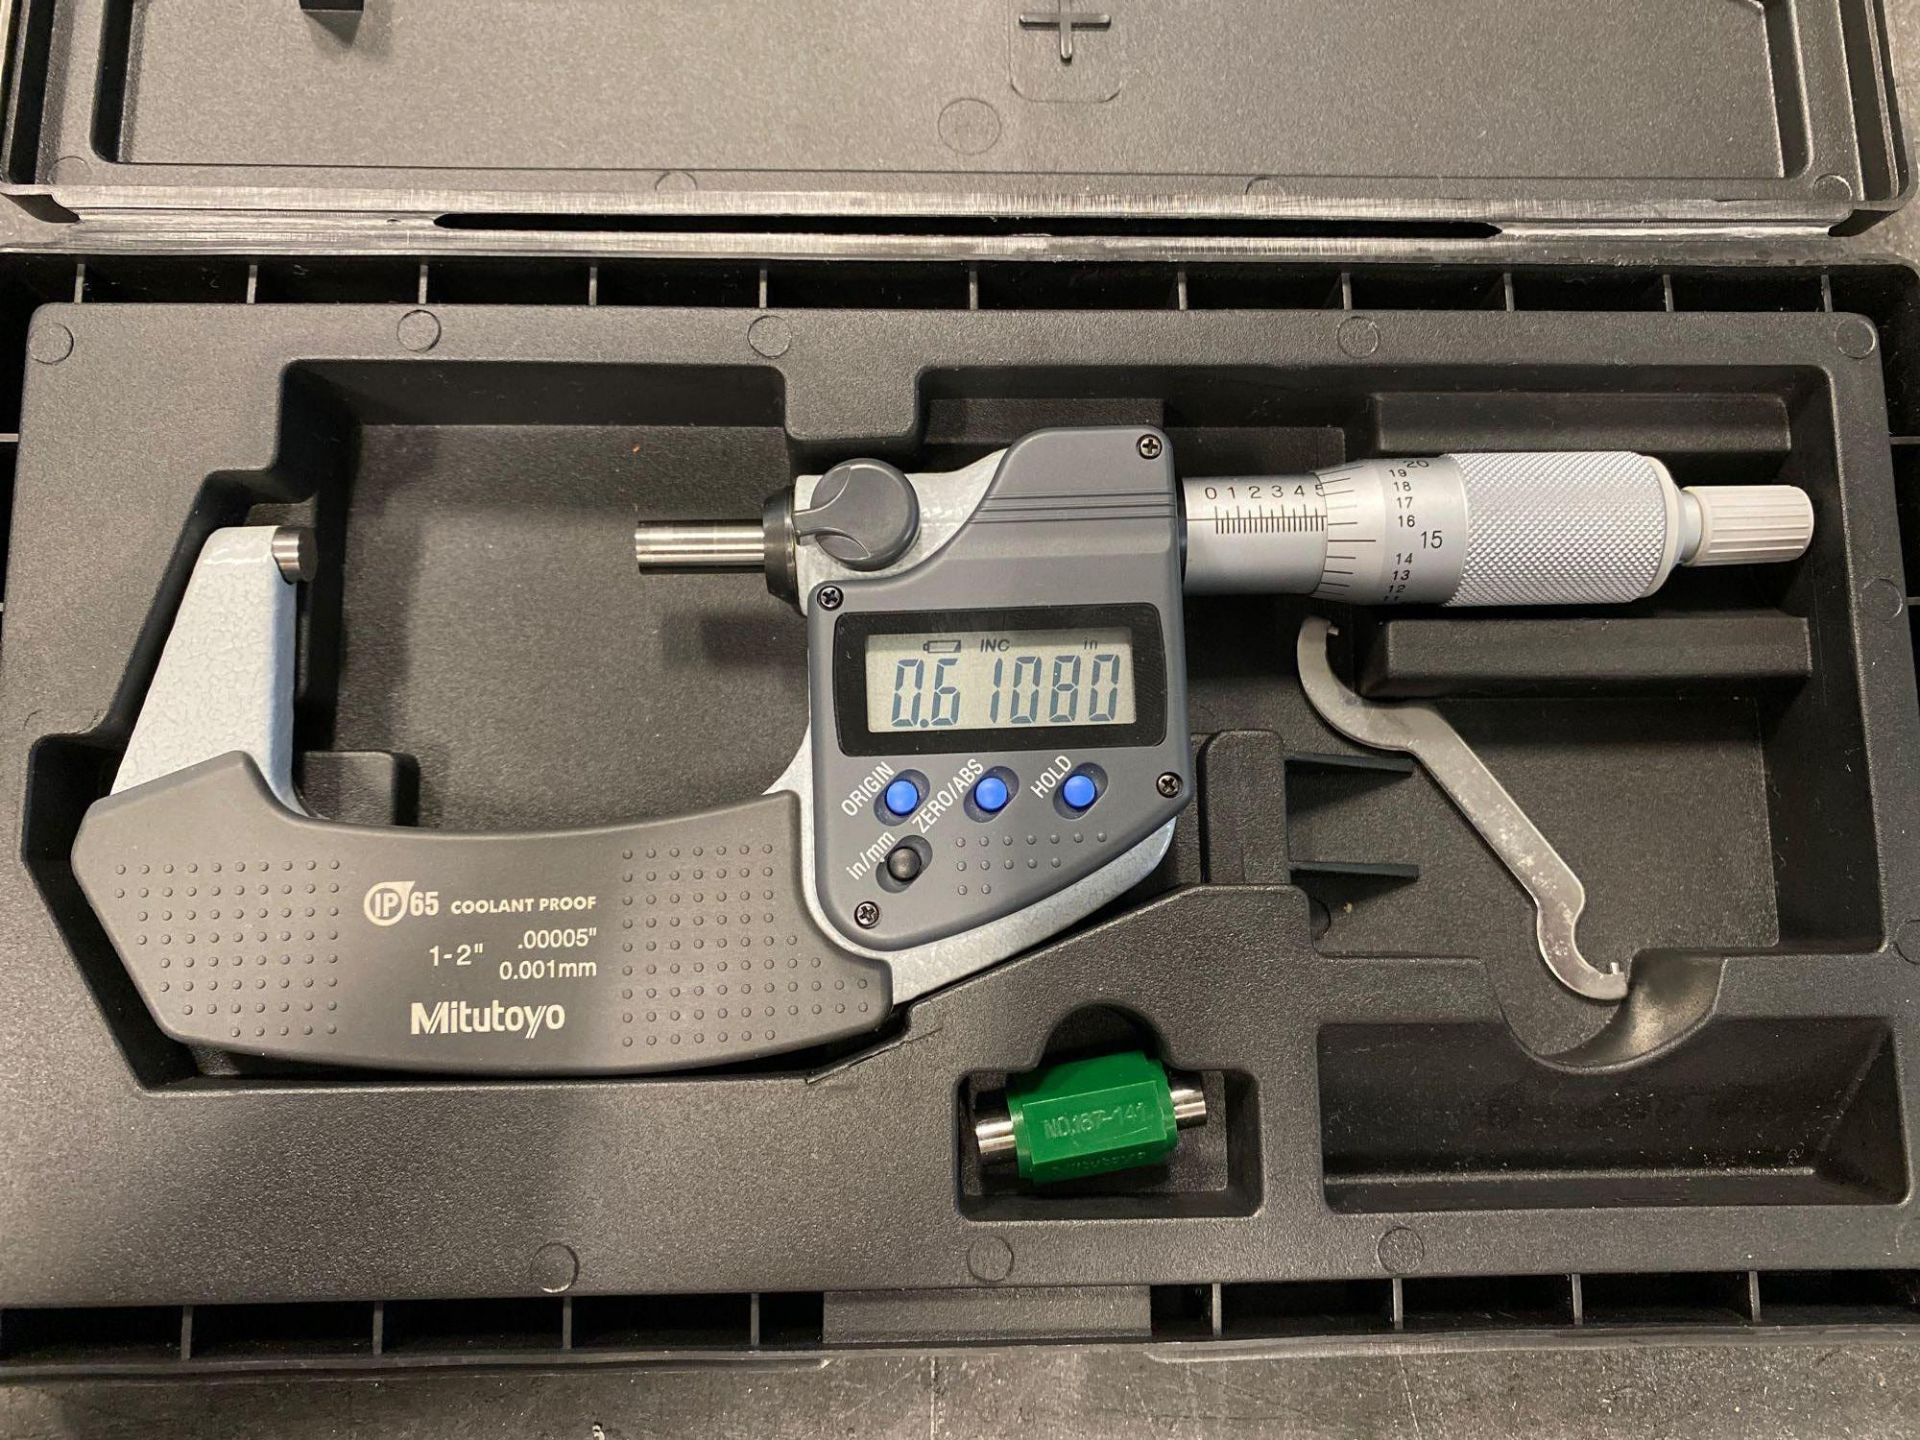 Mitutoyo 1-2” Digital Outside Micrometer